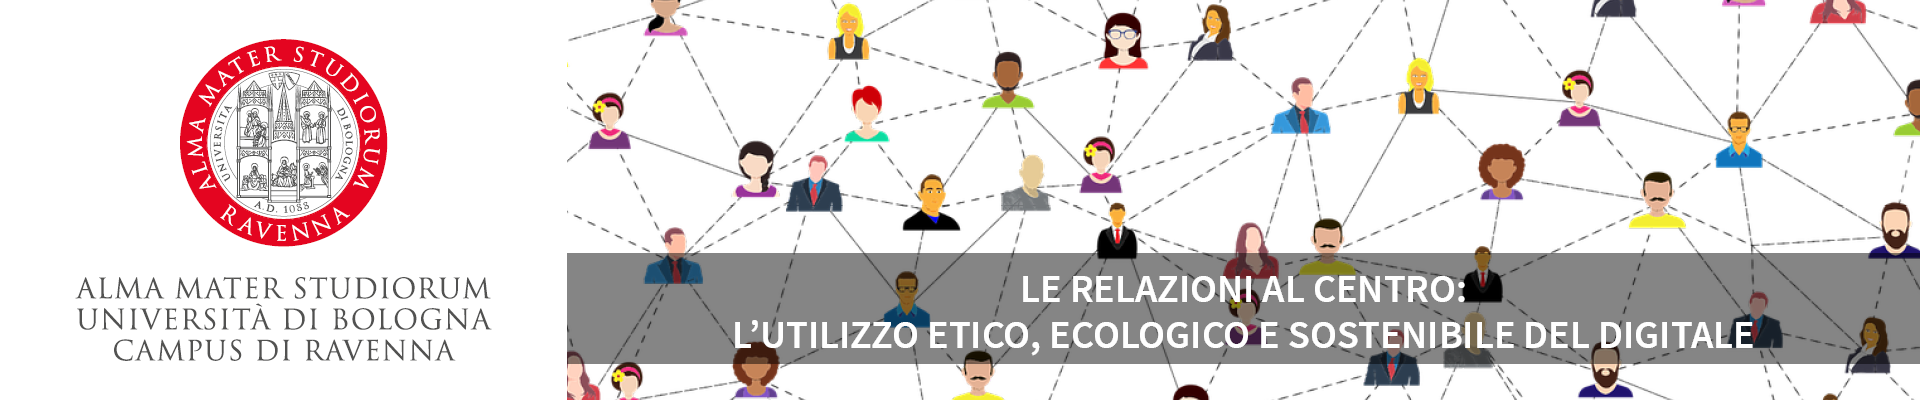 Le relazioni al centro: l’utilizzo etico, ecologico e sostenibile del digitale - 